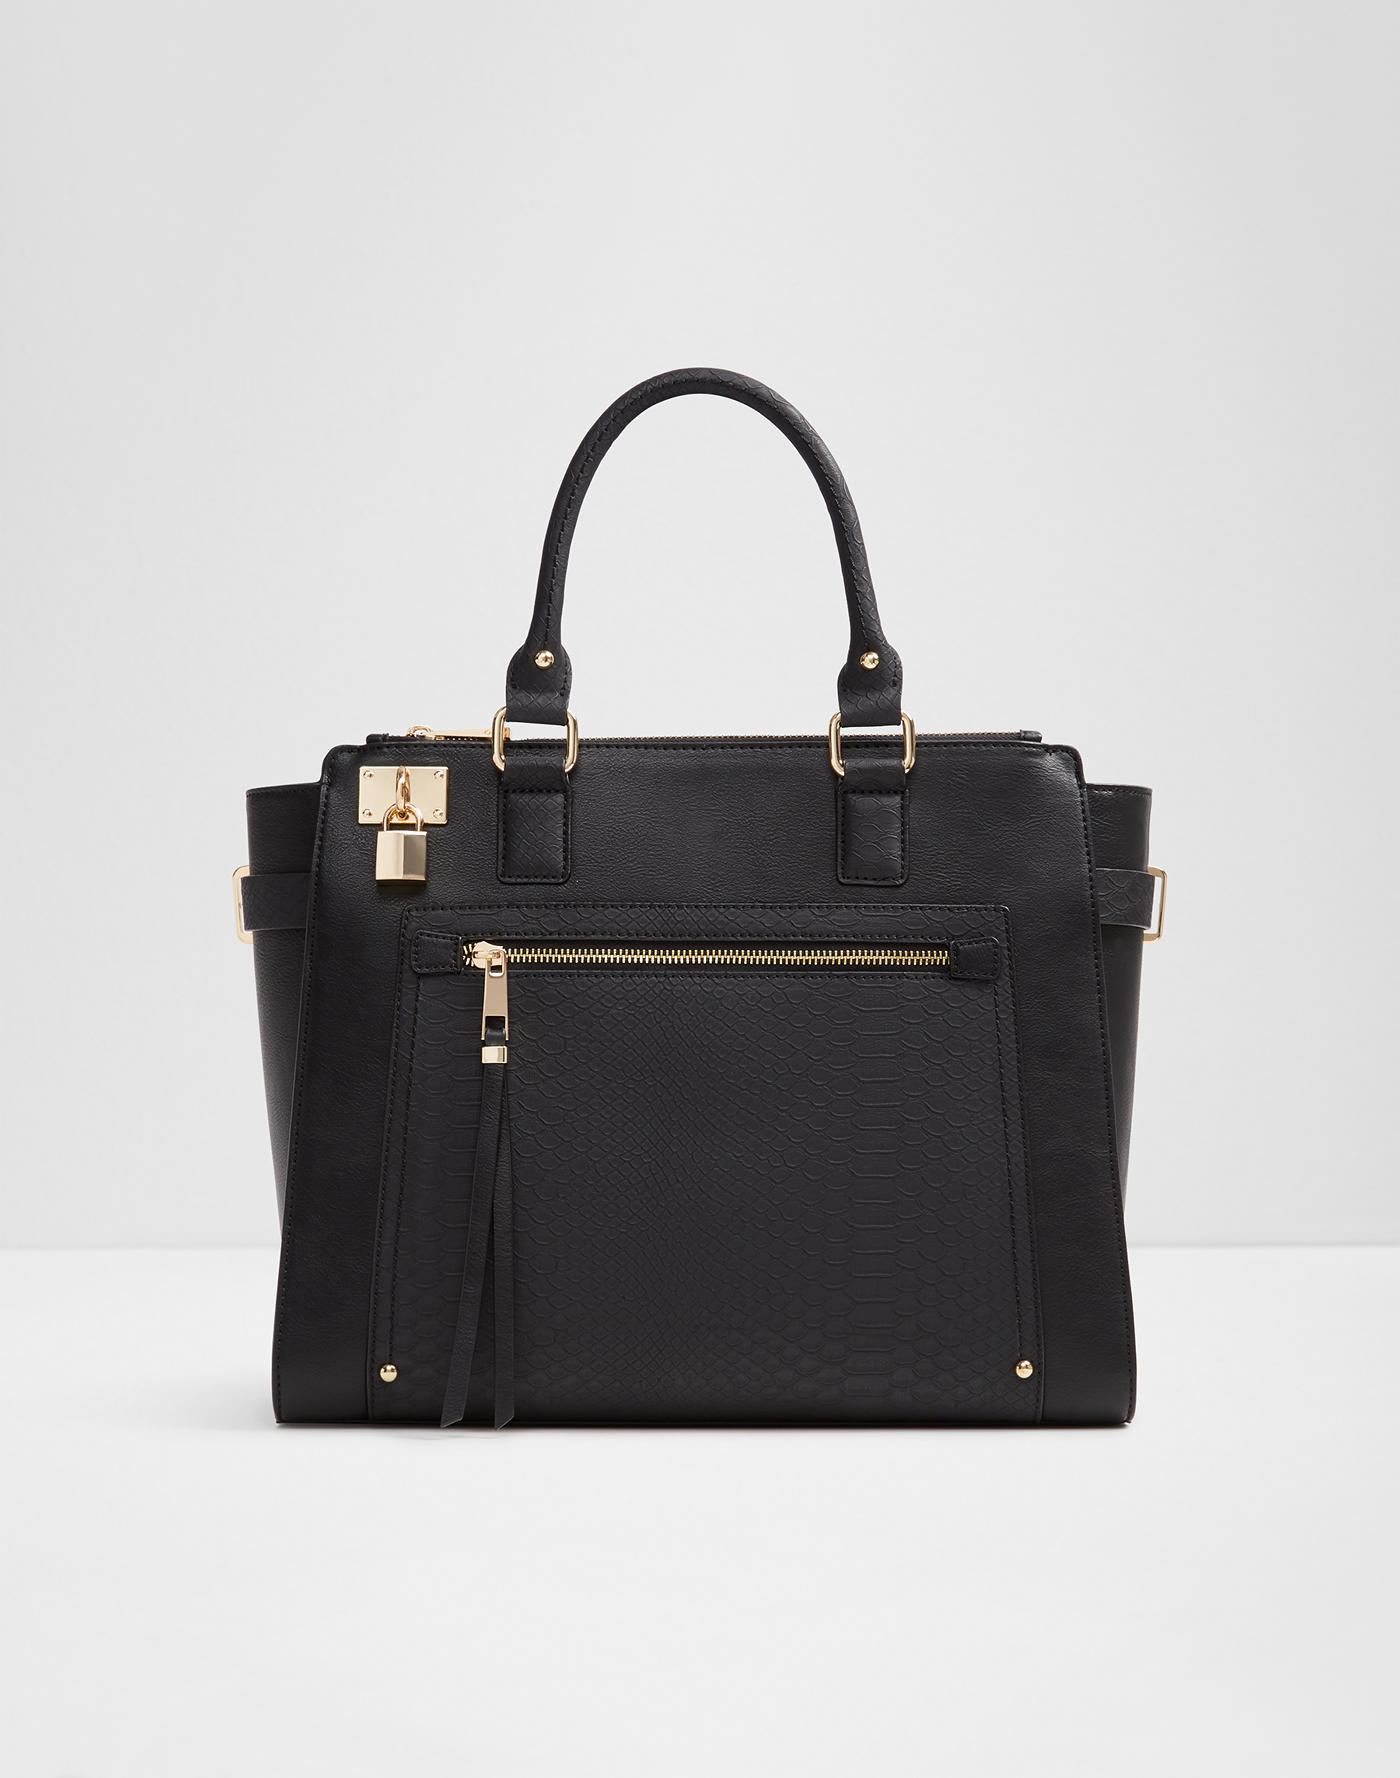 All handbags for women | ALDO Canada